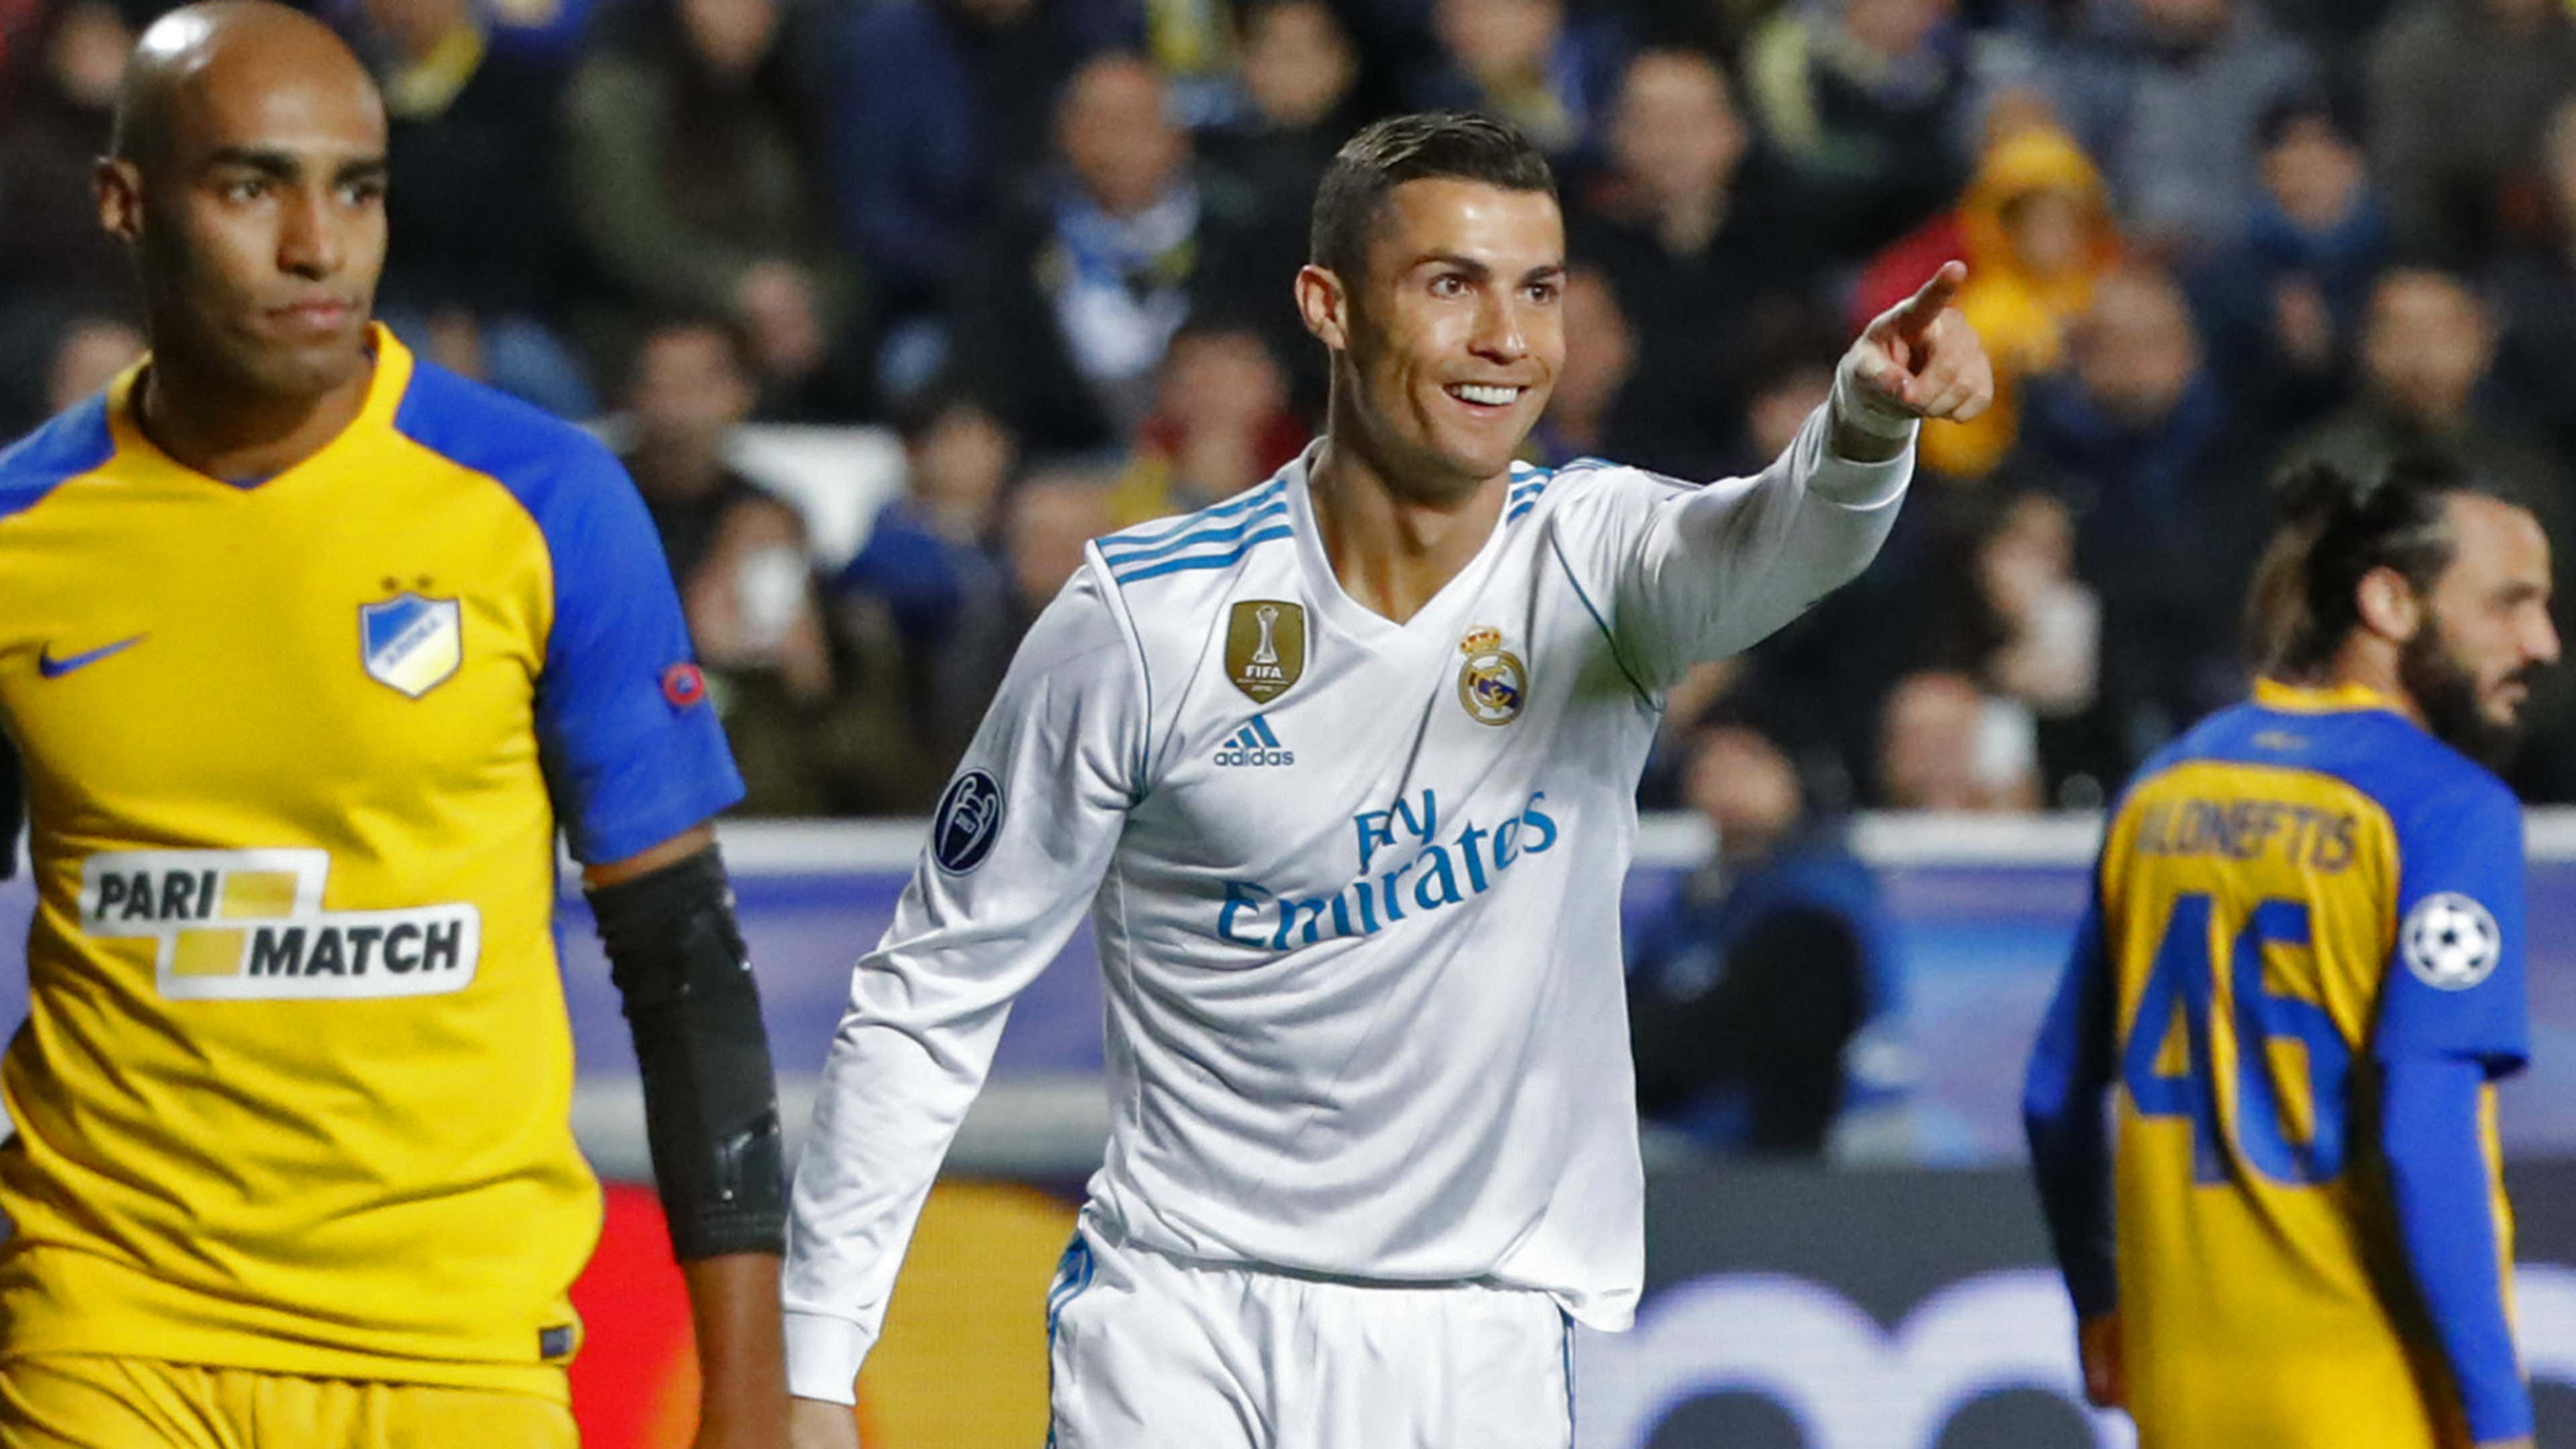 Para os torcedores do Real Madrid, Cristiano Ronaldo não é o maior jogador  da história do clube